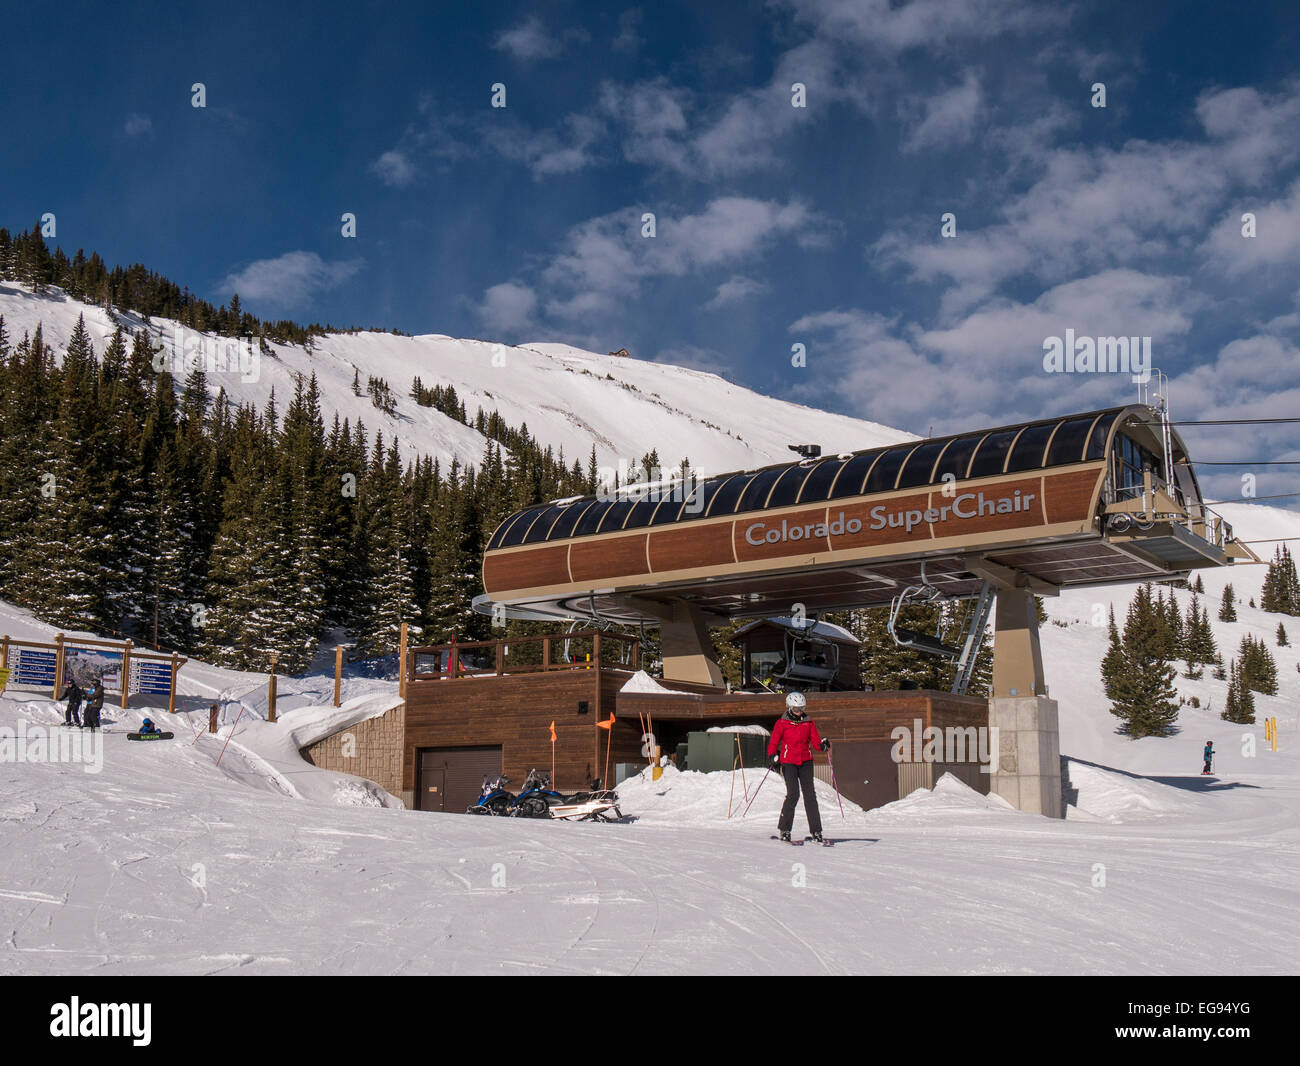 Colorado Super sedia, picco 8, Breckenridge Ski Resort, Breckenridge, Colorado. Foto Stock